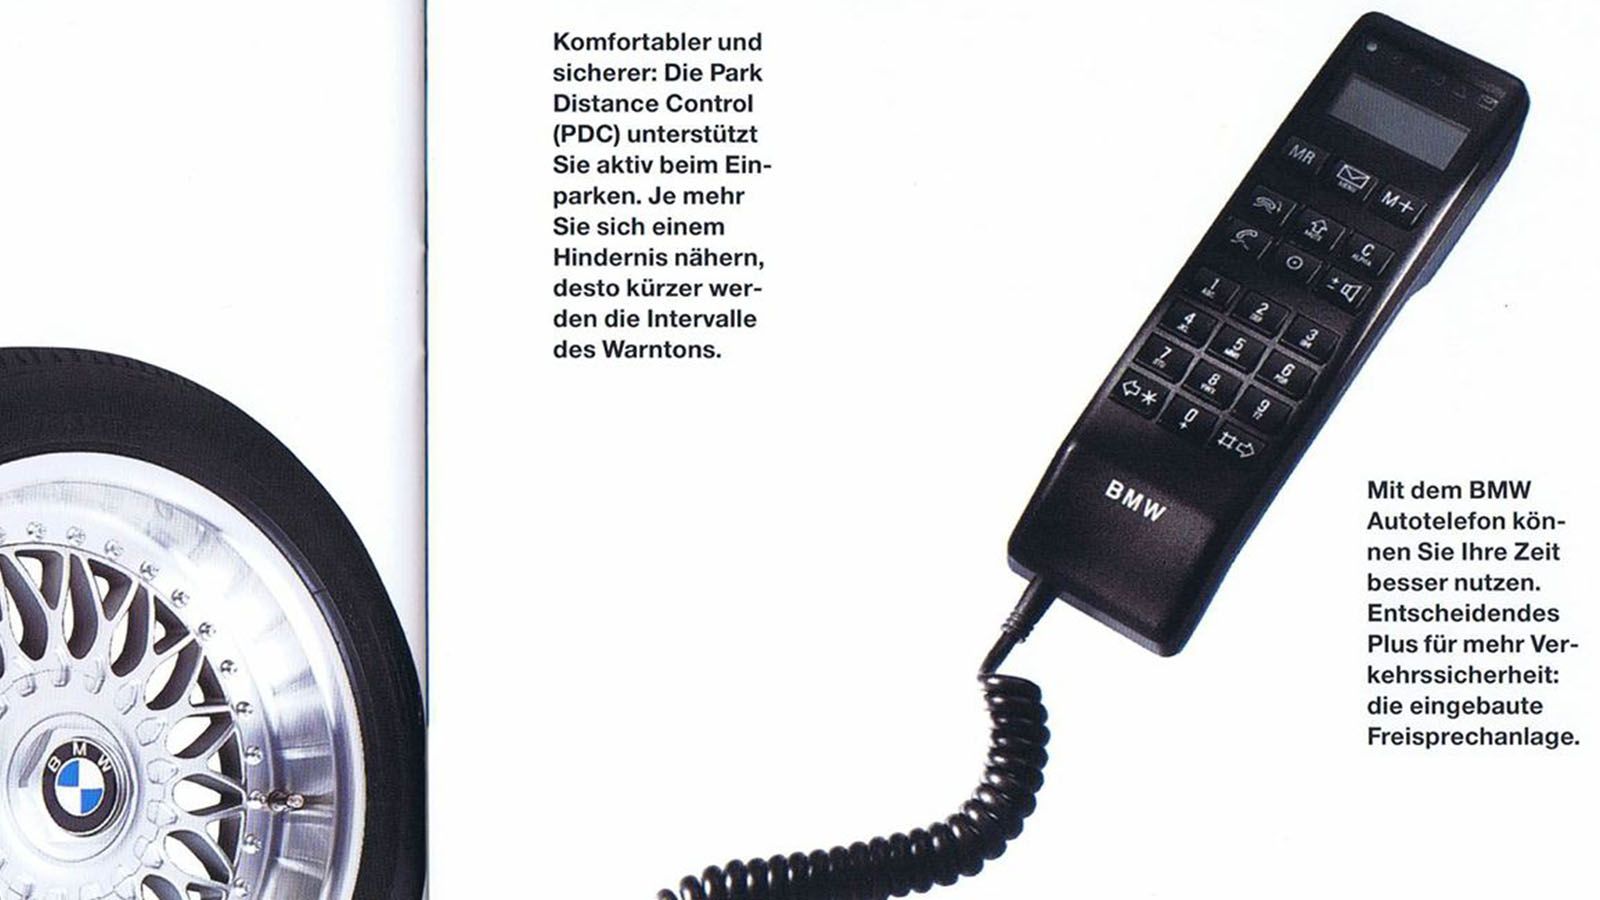 Телефон на 7 15. Сотовый телефон БМВ. Автотелефон Bosch. Telephone car игрушка. Радиотелефон до 7 километров.